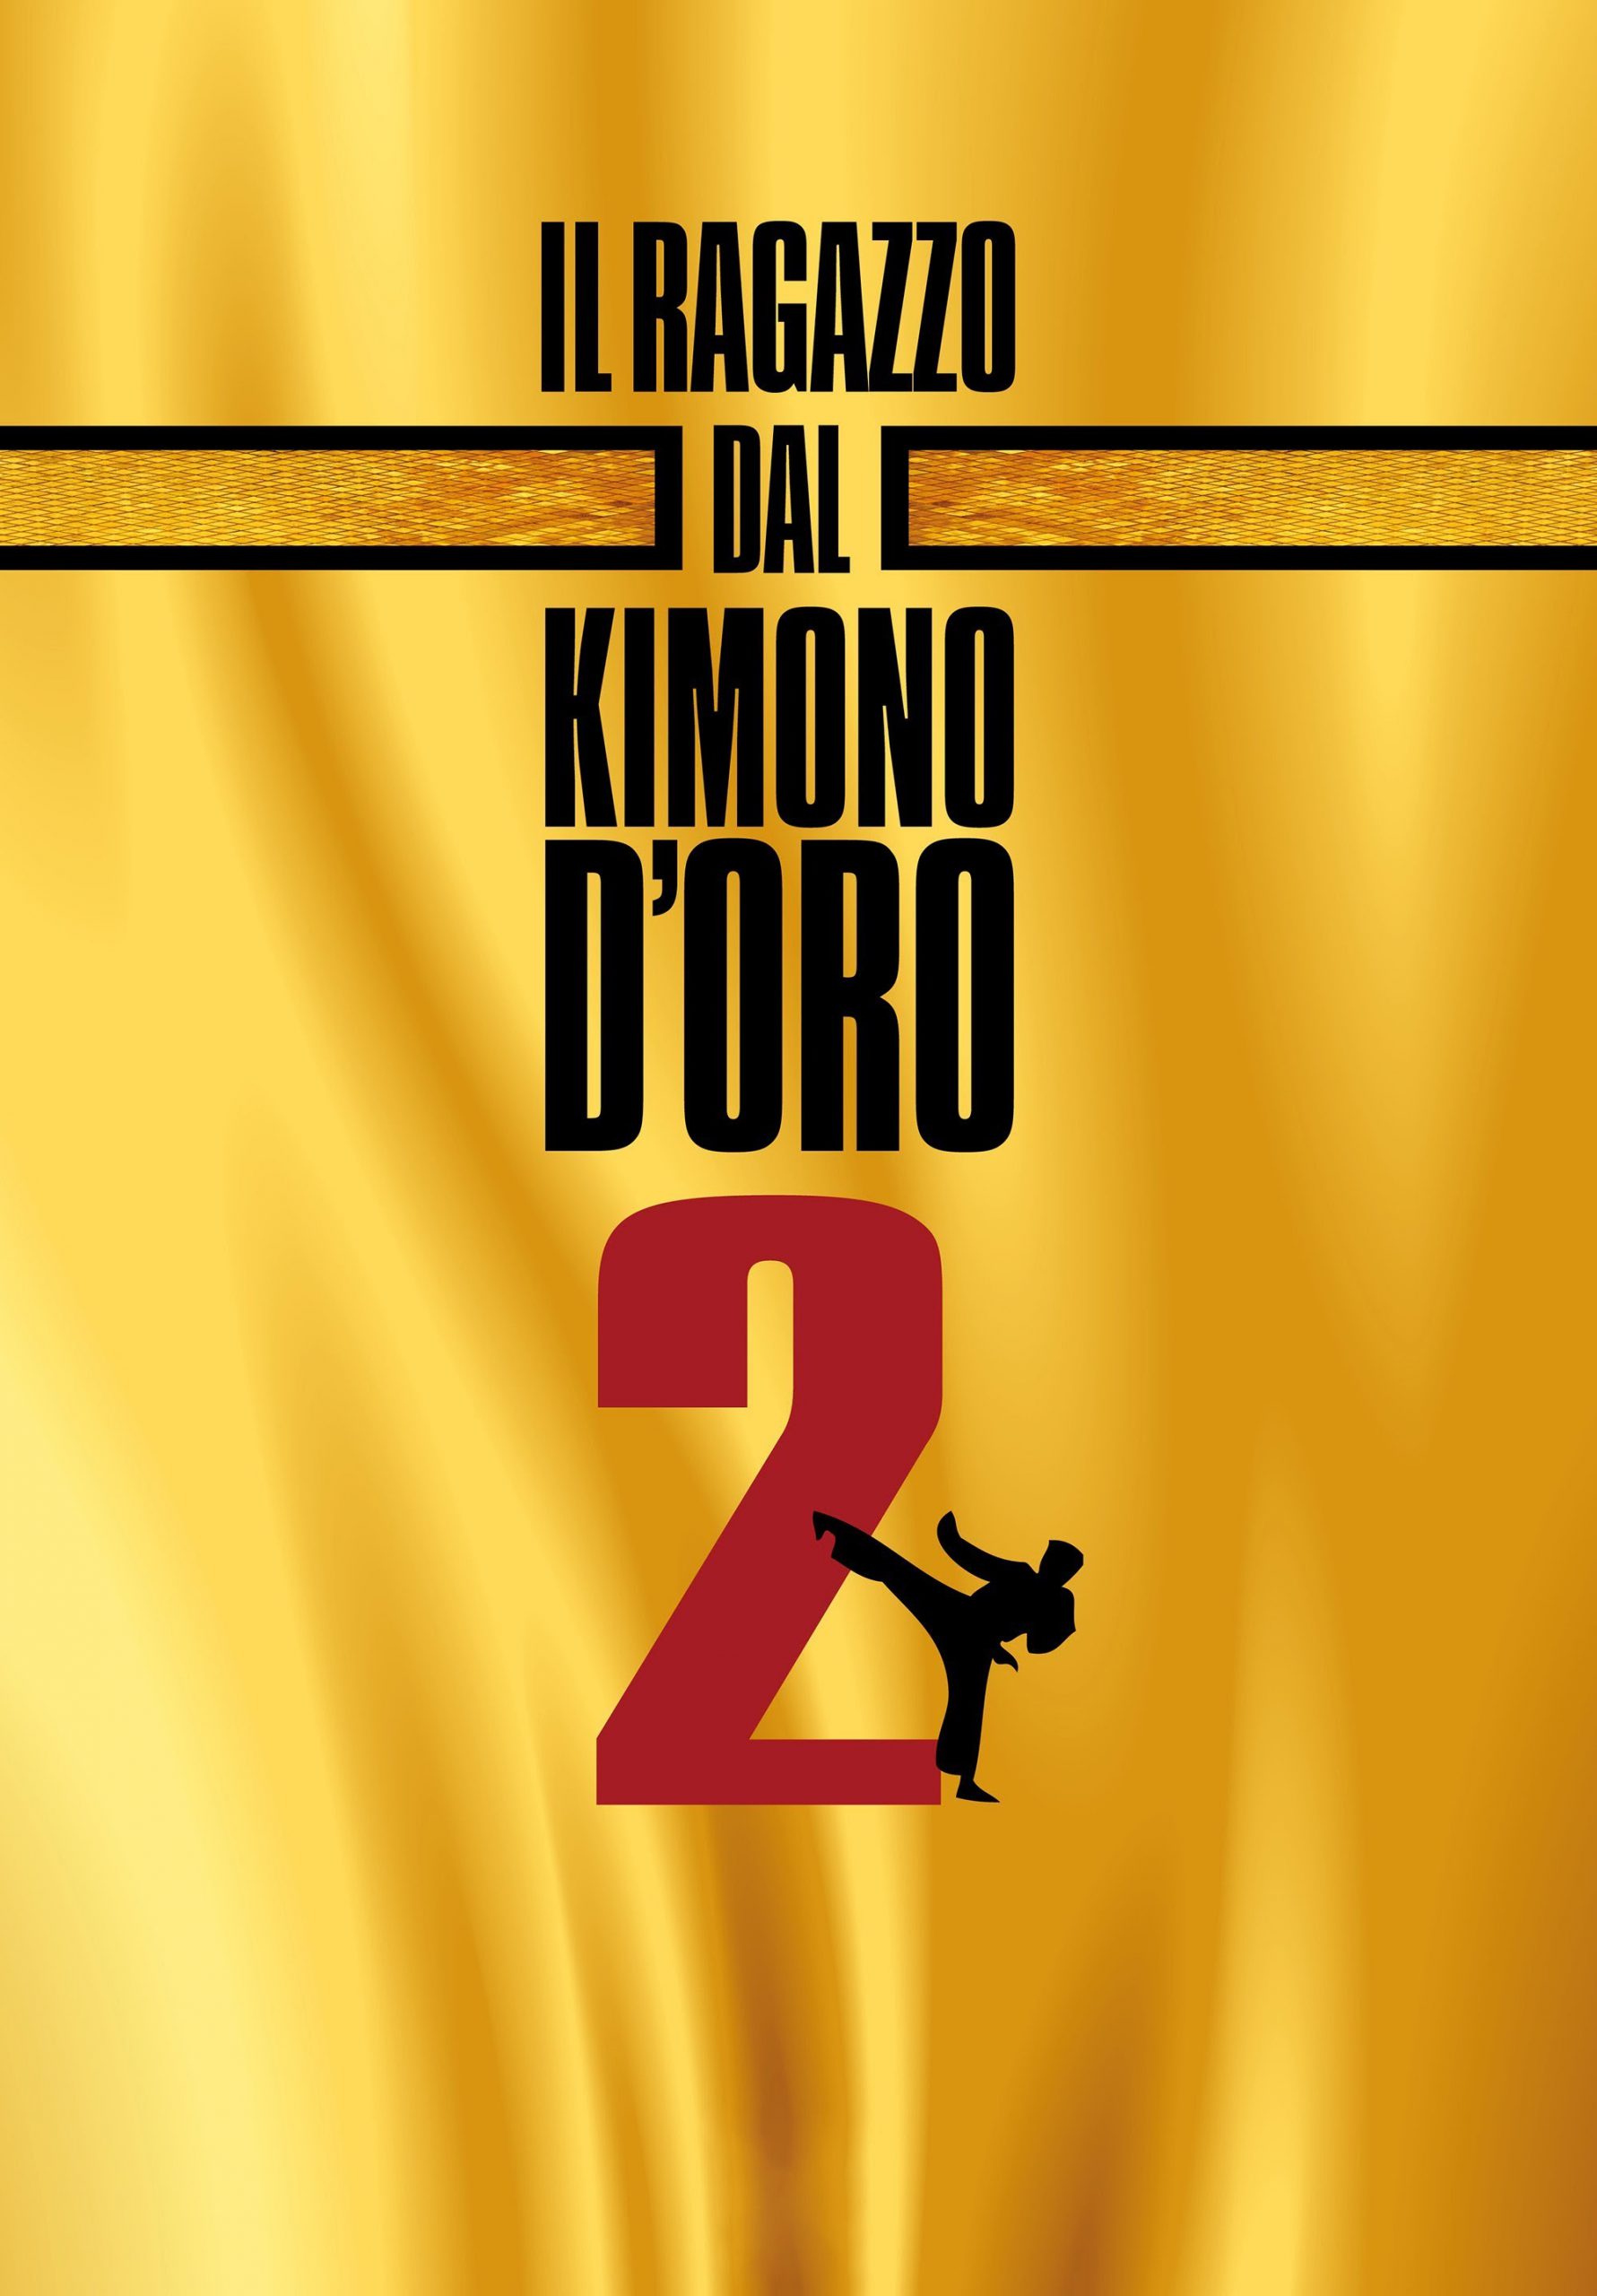 Il ragazzo dal kimono d’oro 2 [HD] (1988)